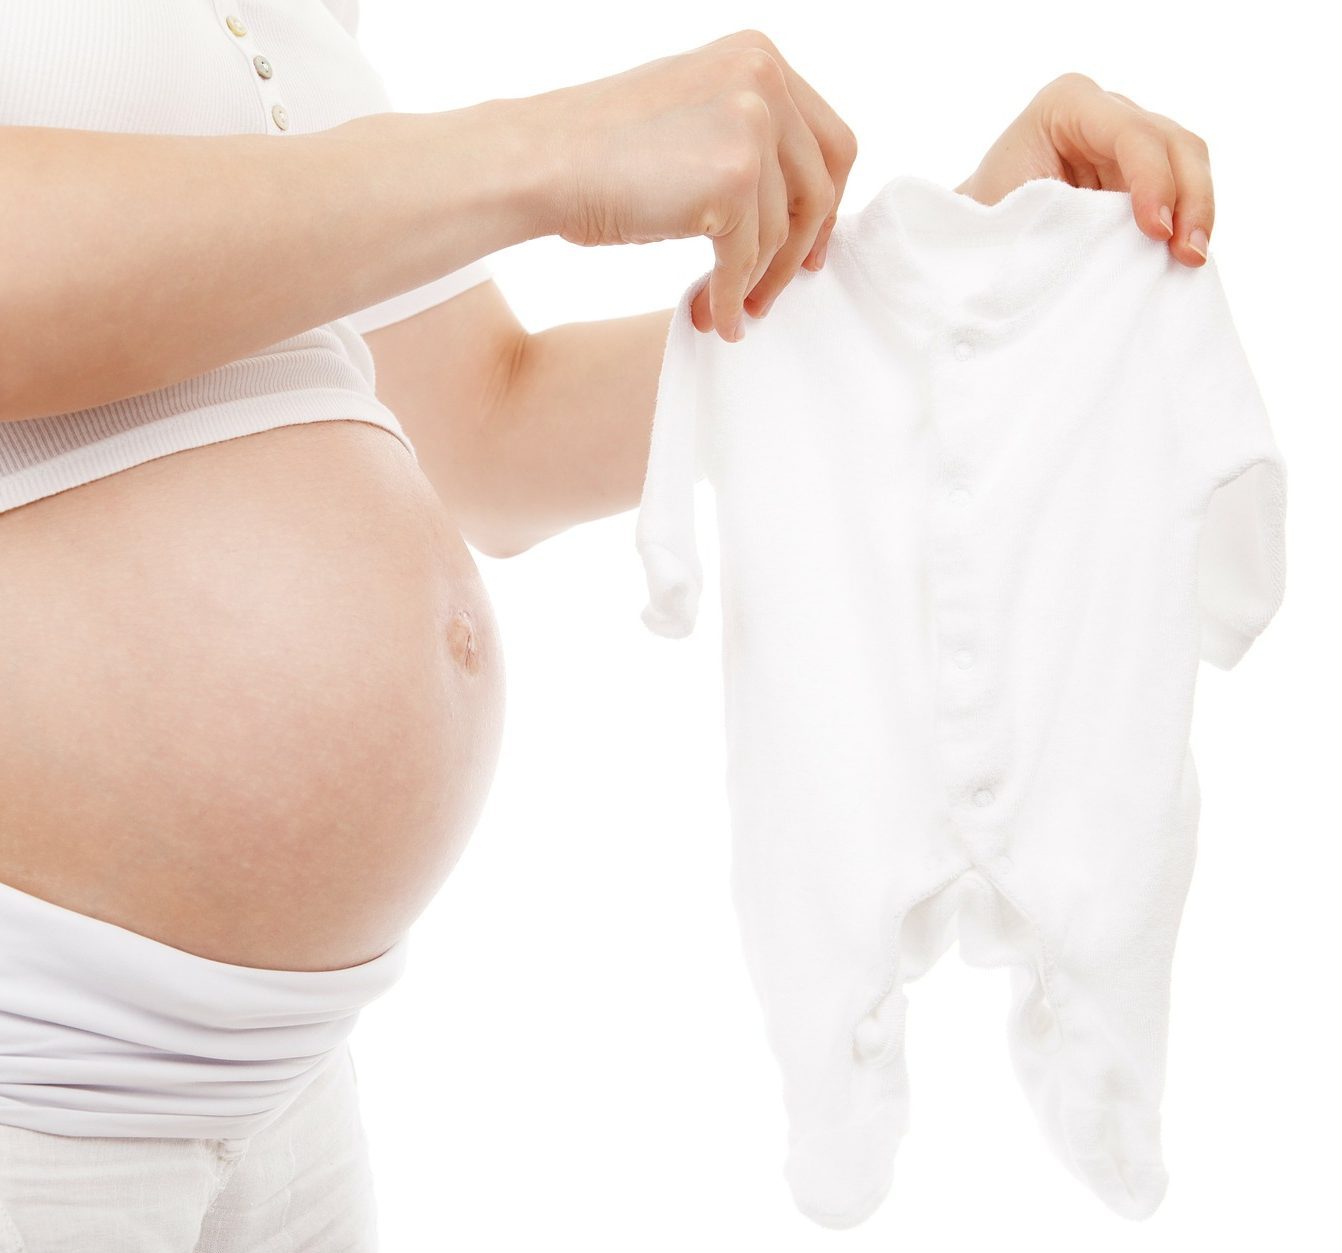 Startklar zur Geburt – Was muss in die Kliniktasche?